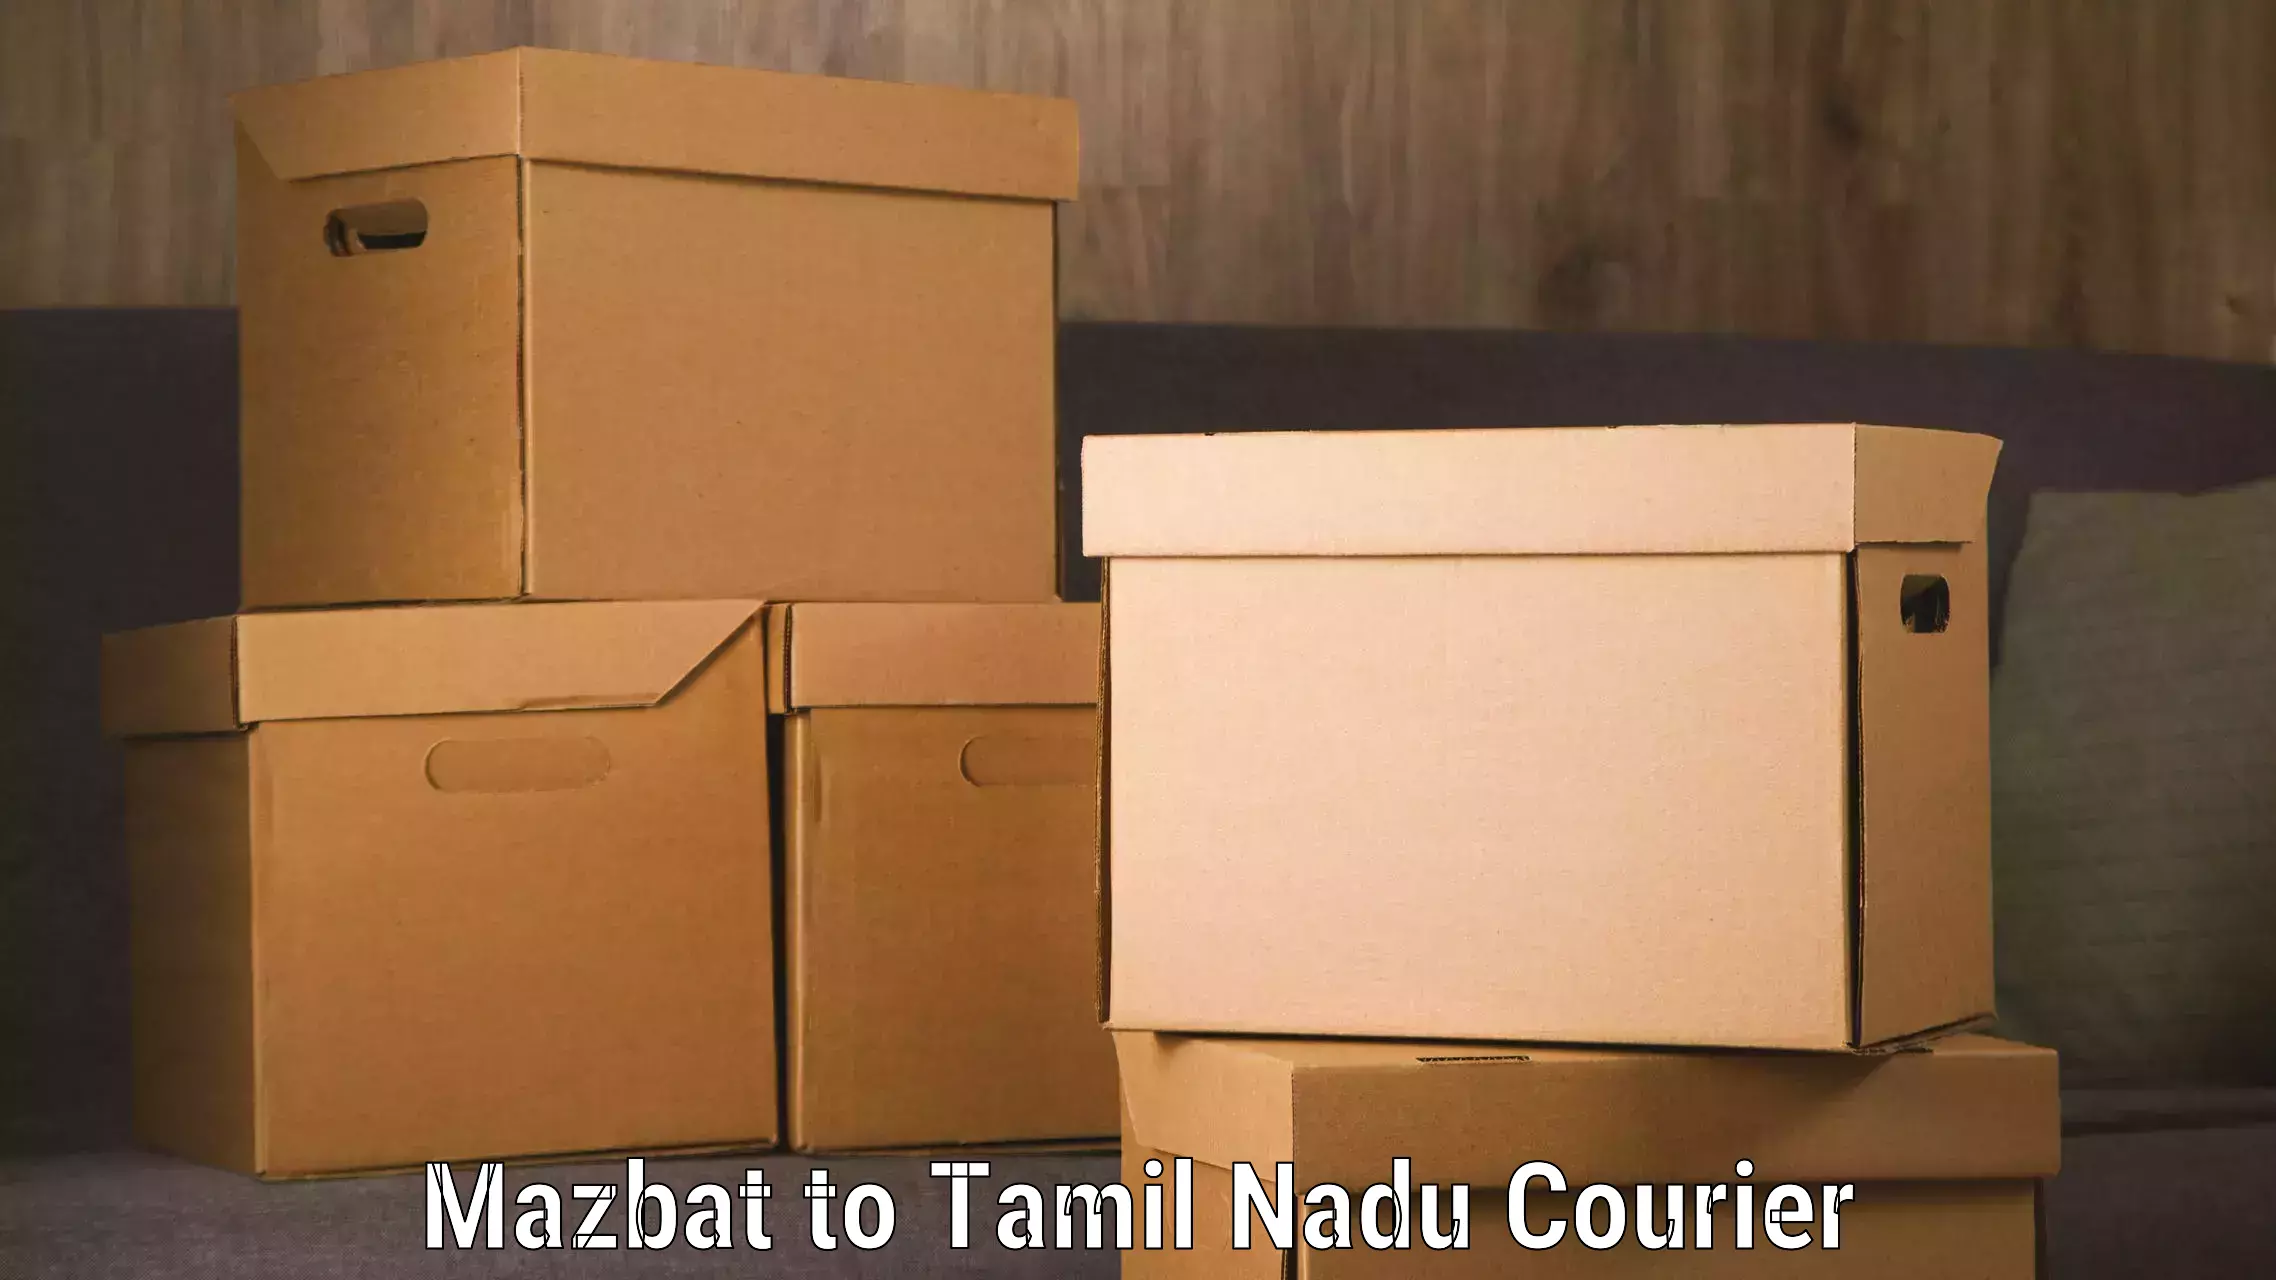 Luggage delivery news Mazbat to Tirupattur